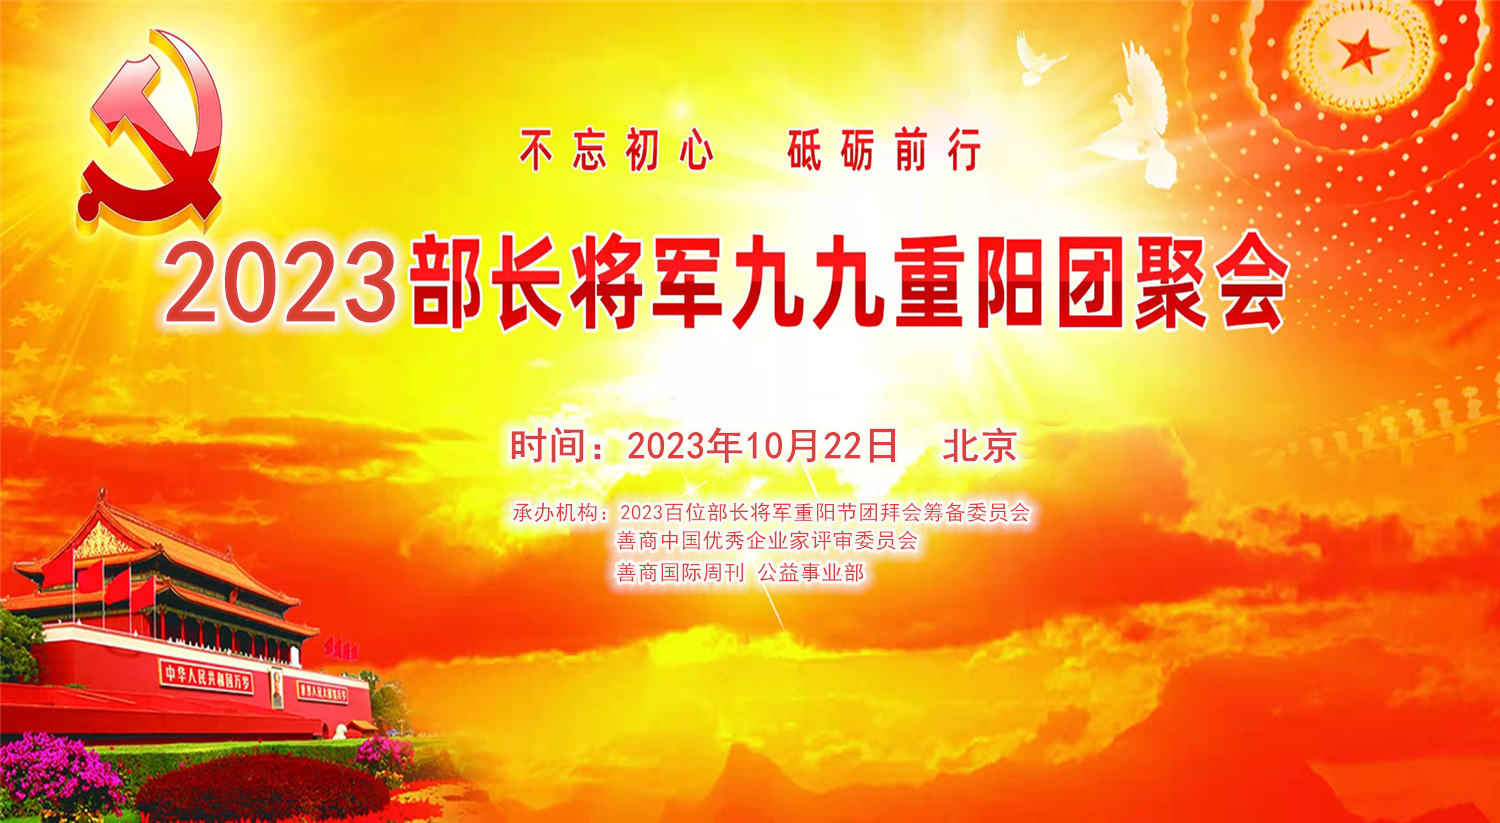 不忘初心跟党走“2023百位将军部长团拜会”10月将在京举行